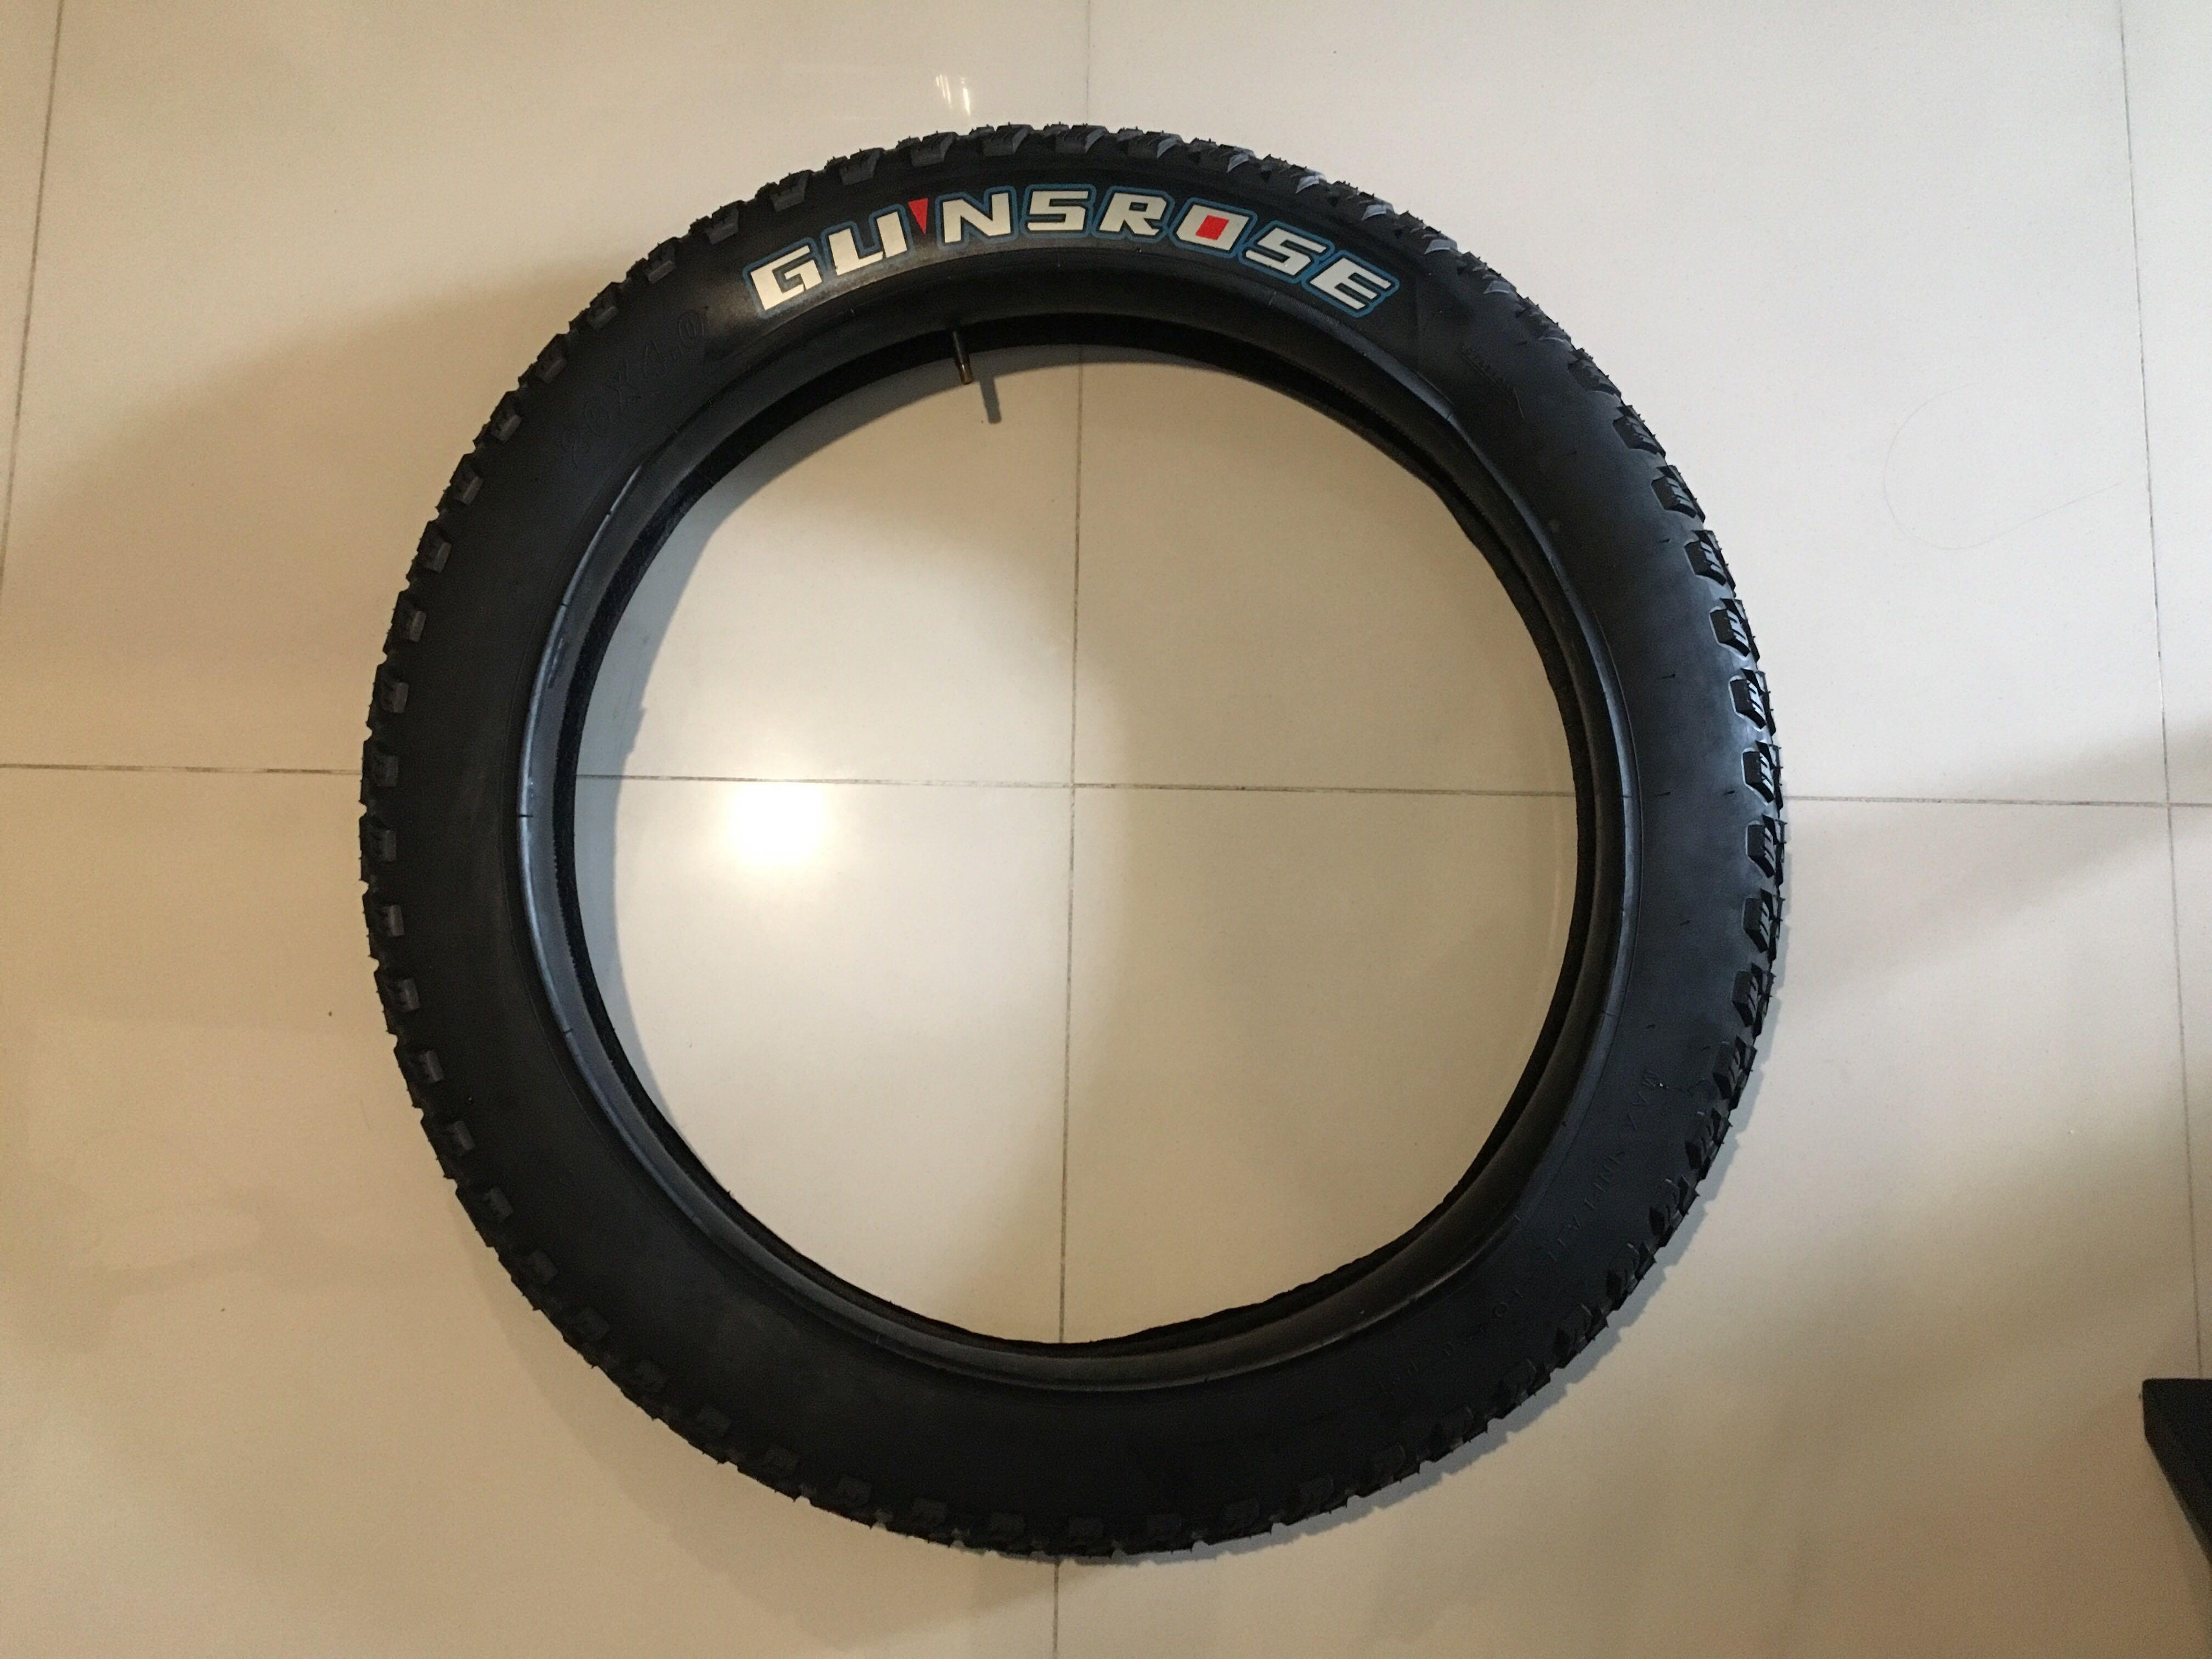 26 x 4 fat bike tire